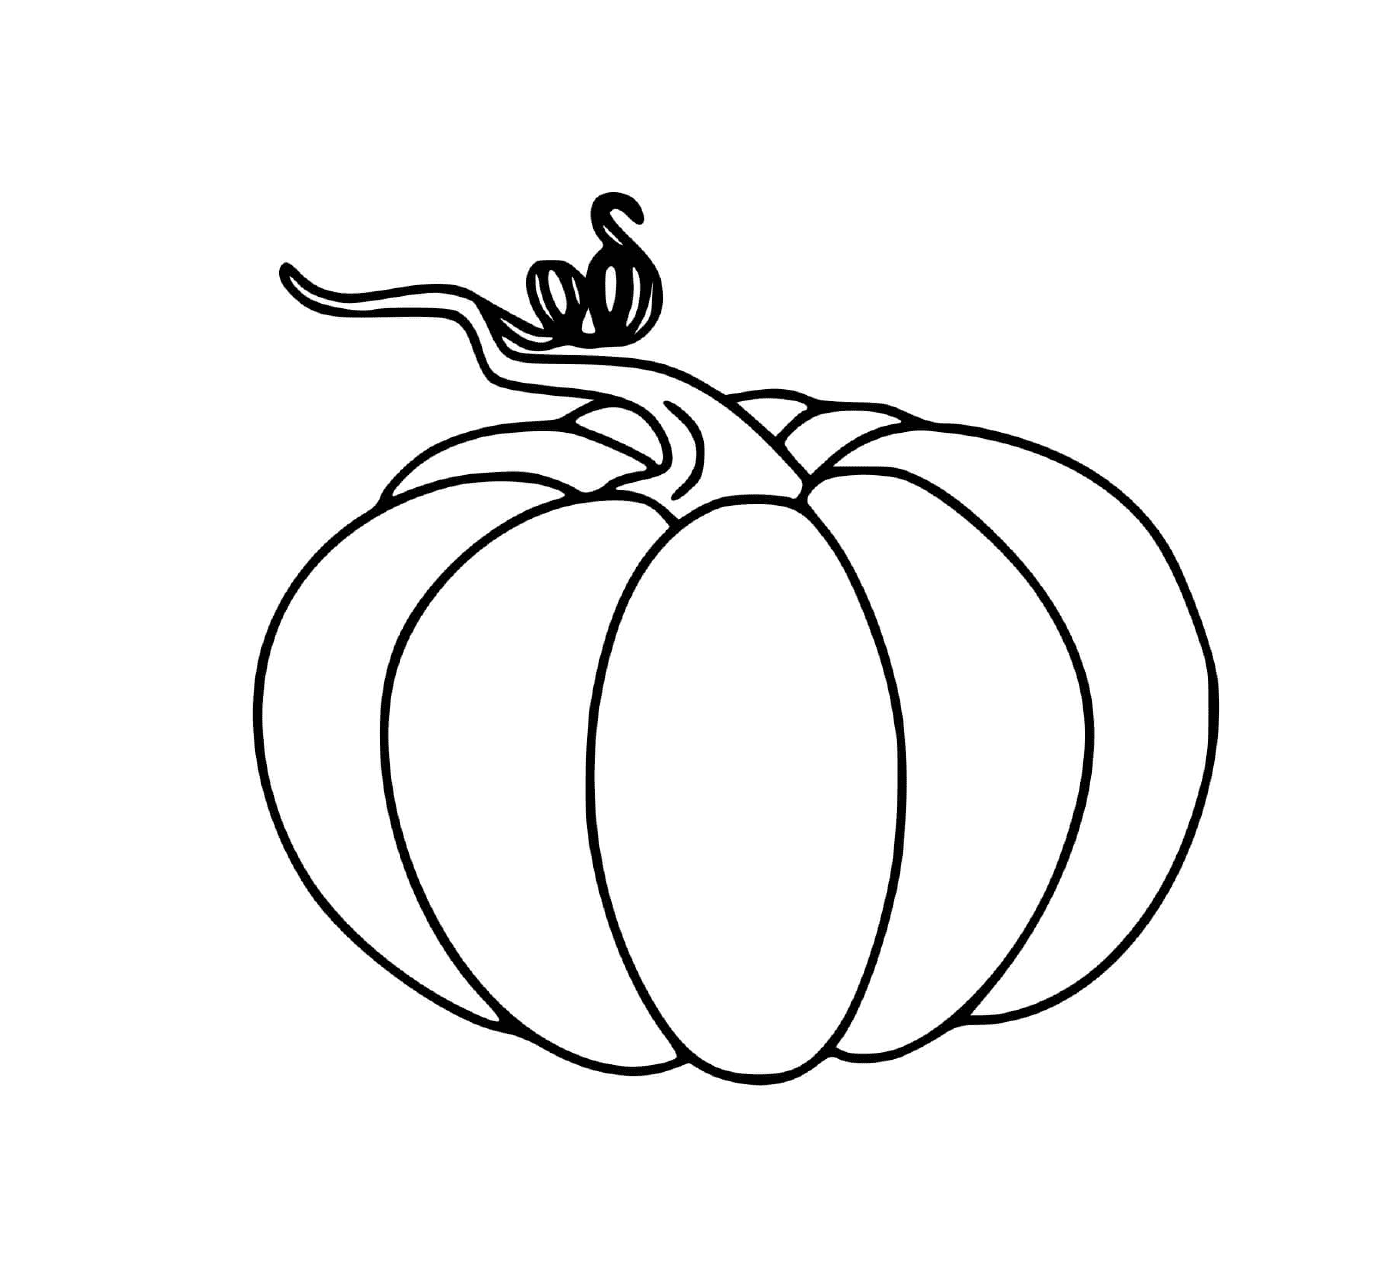  A scary Halloween pumpkin 